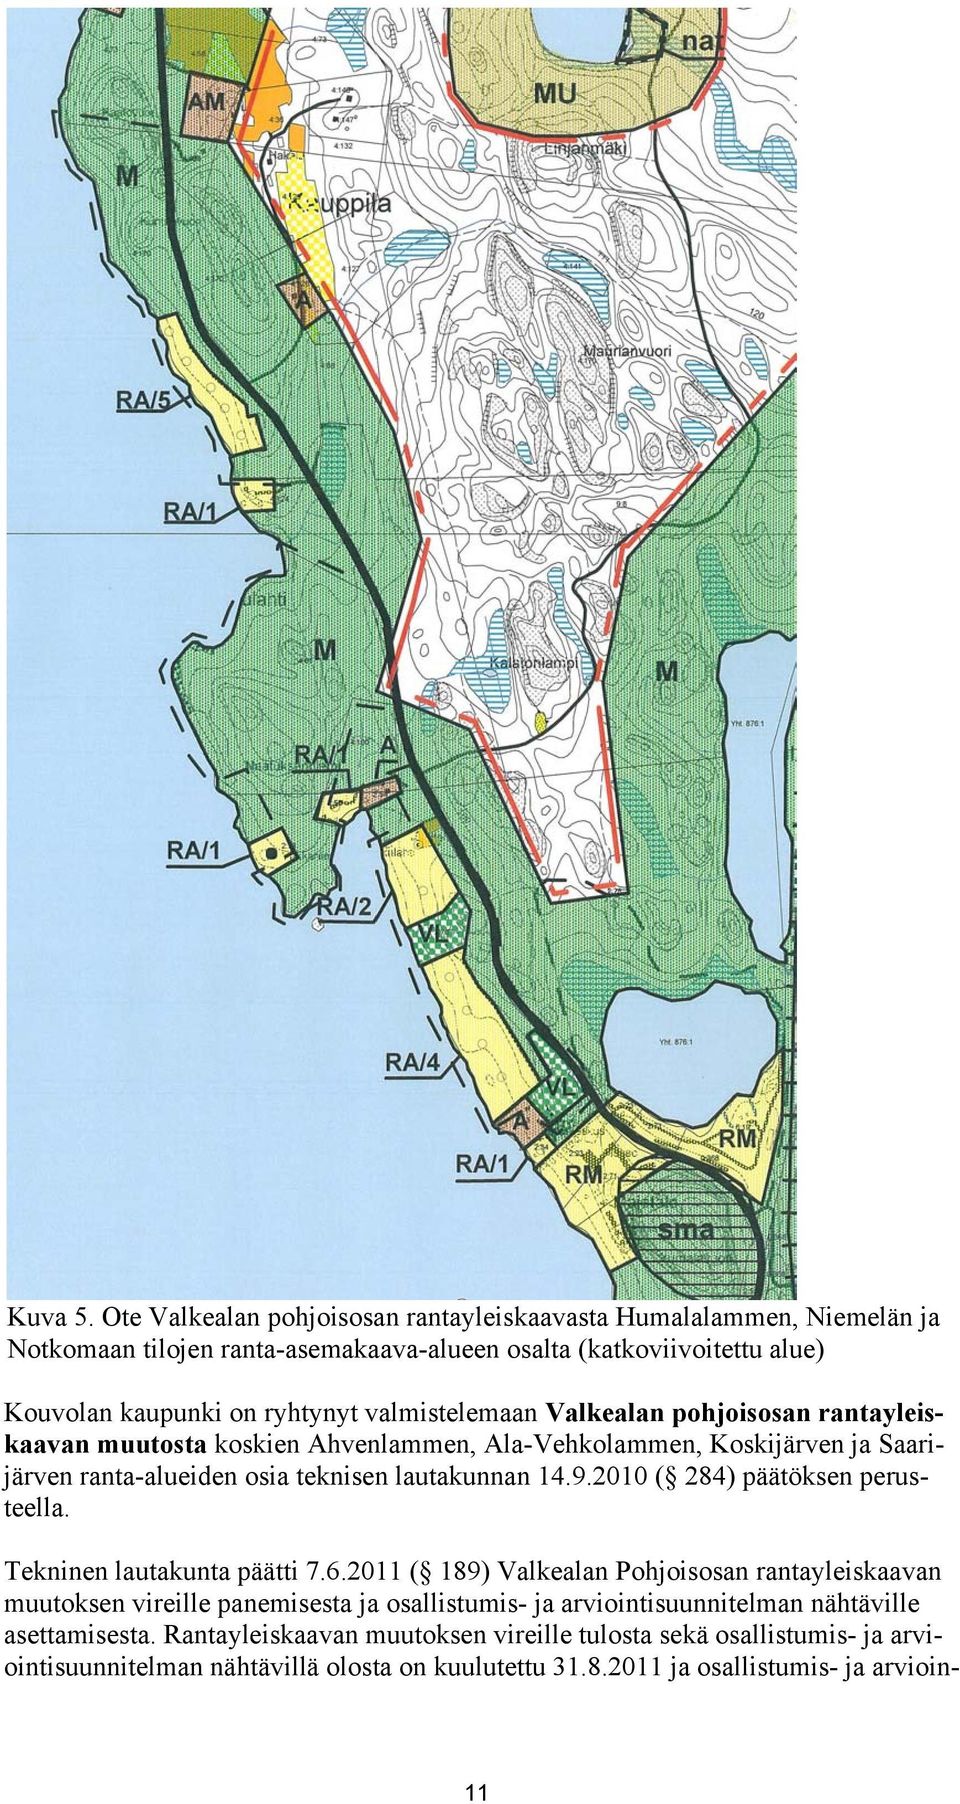 valmistelemaan Valkealan pohjoisosan rantayleiskaavan muutosta koskien Ahvenlammen, Ala-Vehkolammen, Koskijärven ja Saarijärven ranta-alueiden osia teknisen lautakunnan 14.9.